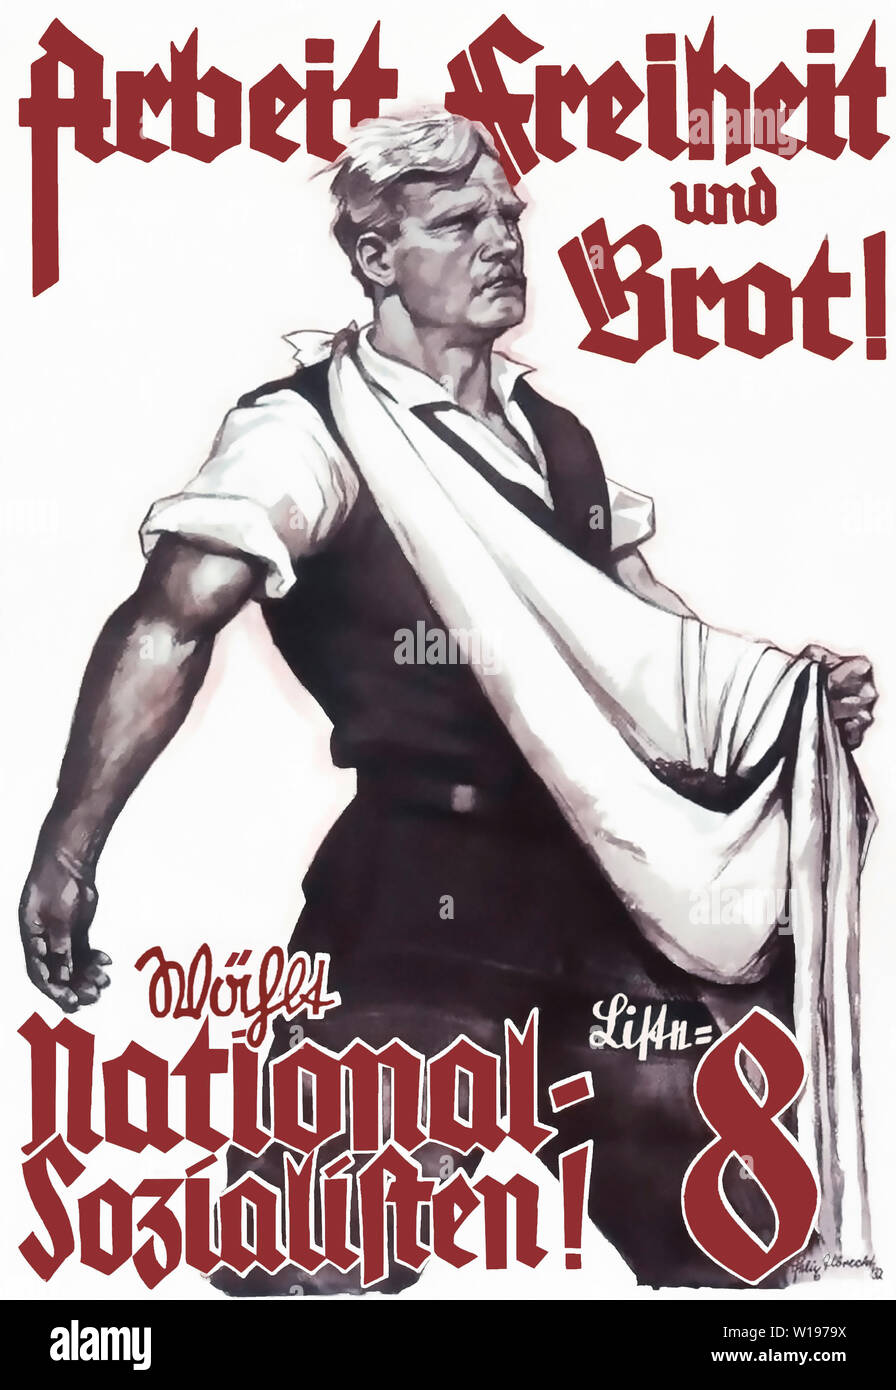 Arbeit, Freiheit und Brot! Wählt Liste 8 National-Sozialisten! Foto Stock